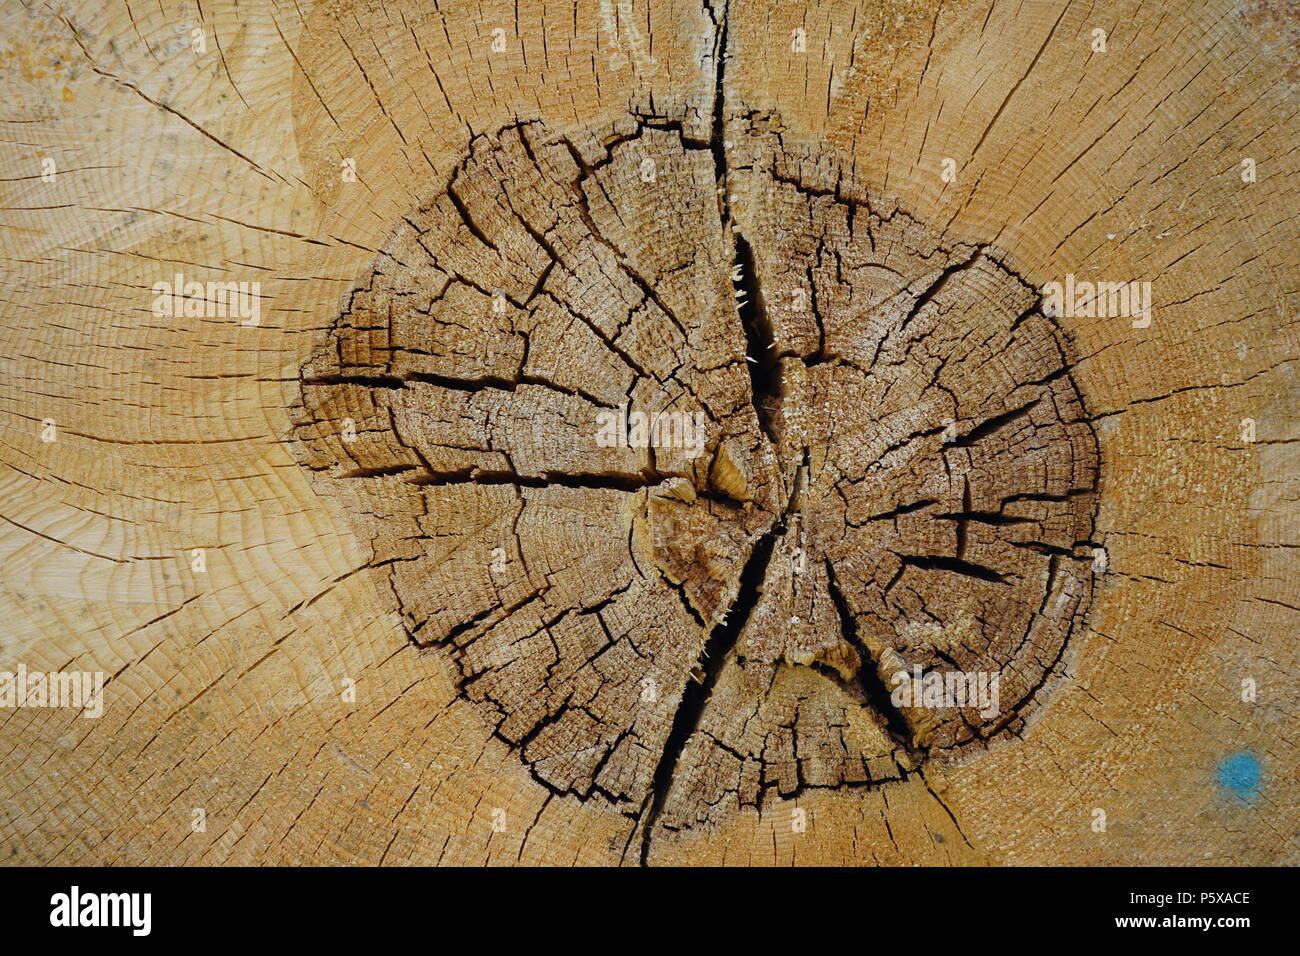 Holz Textur, Querschnitt Baumstammes Baumringe, eines, Deutschland Foto de stock